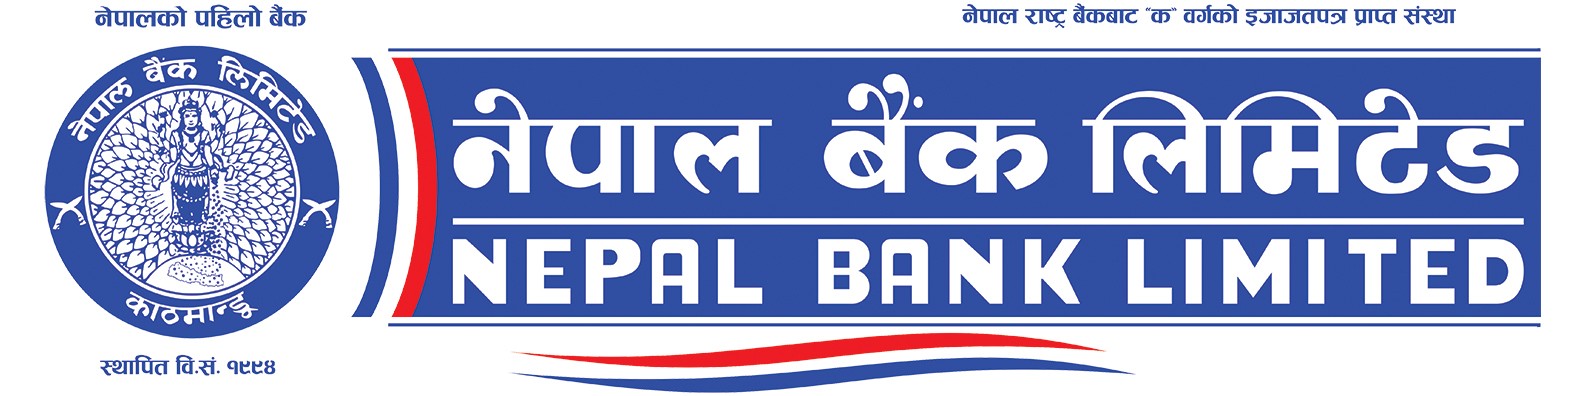 नेपाल बैंक लिमिटेडद्वारा नयाँ कर्जा योजनाहरु घोषणा